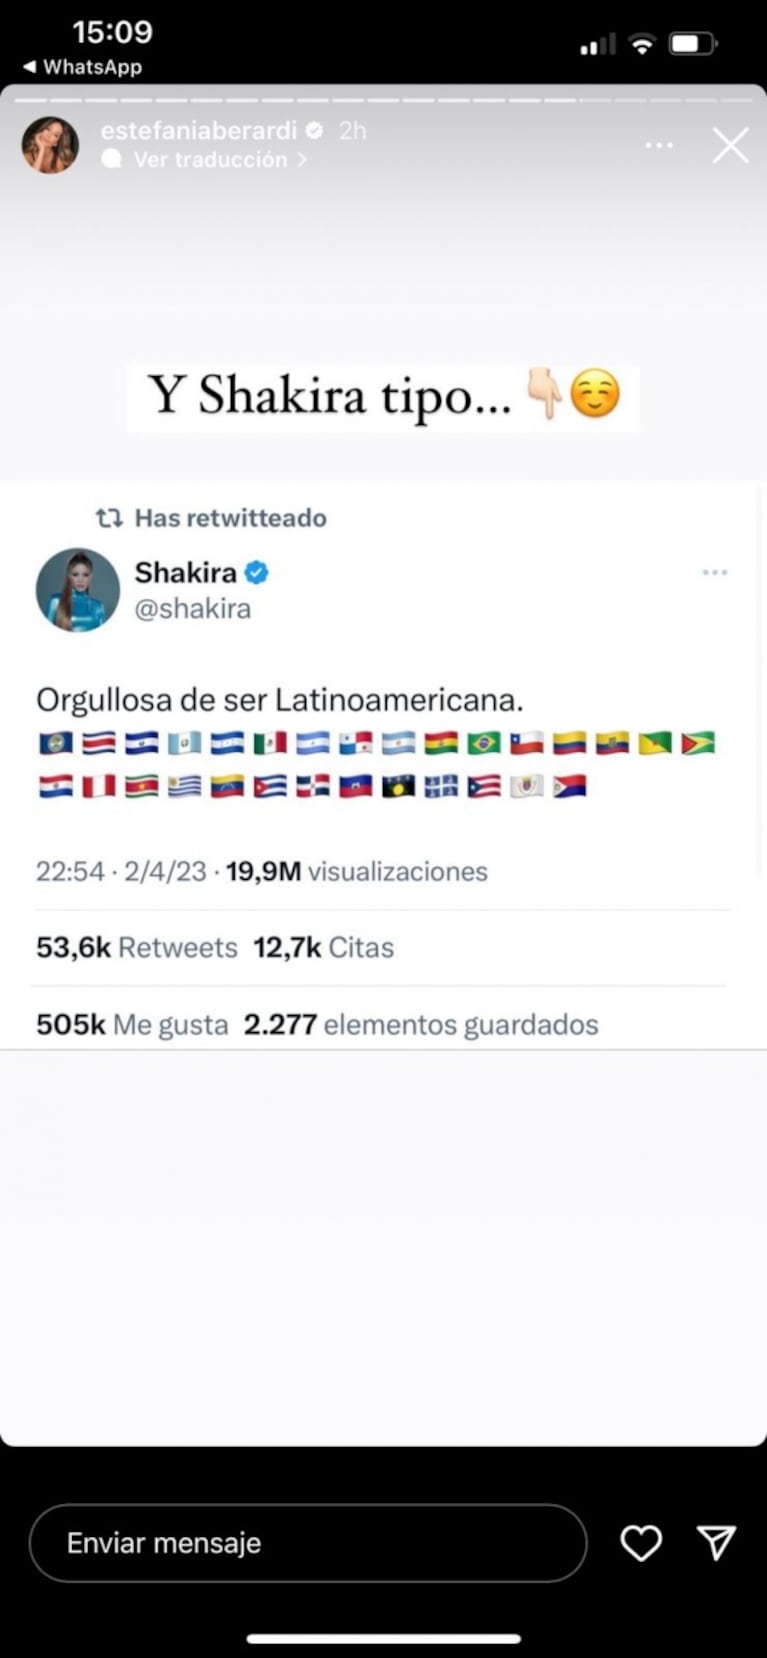 Gerard Piqué apuntó contra Shakira por su origen y ella le respondió: "Orgullosa de ser latinoamericana"